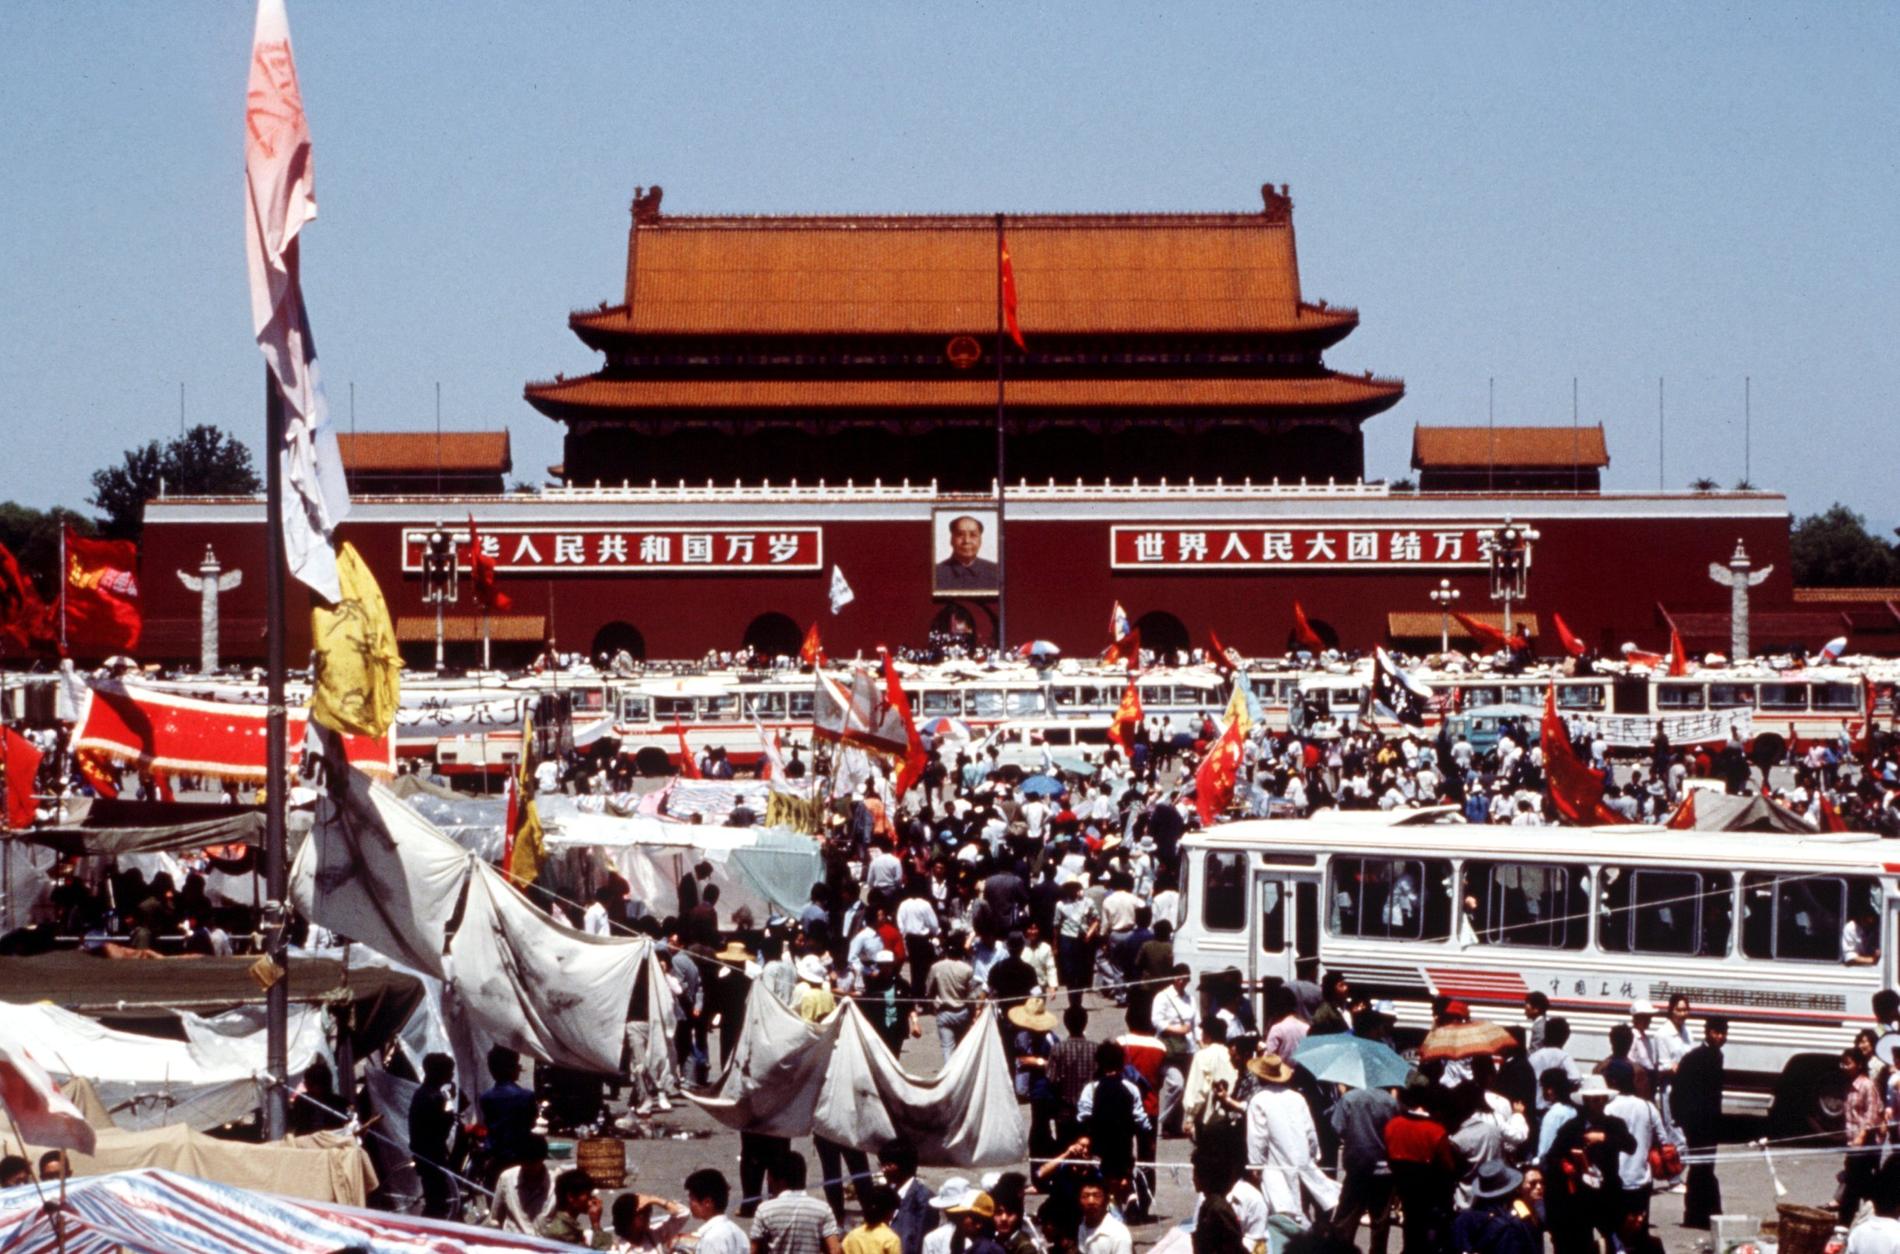 Obs! Obehaglig bild från massakern härnäst, ej för känsliga. Här från demonstrationerna i Peking 1989.